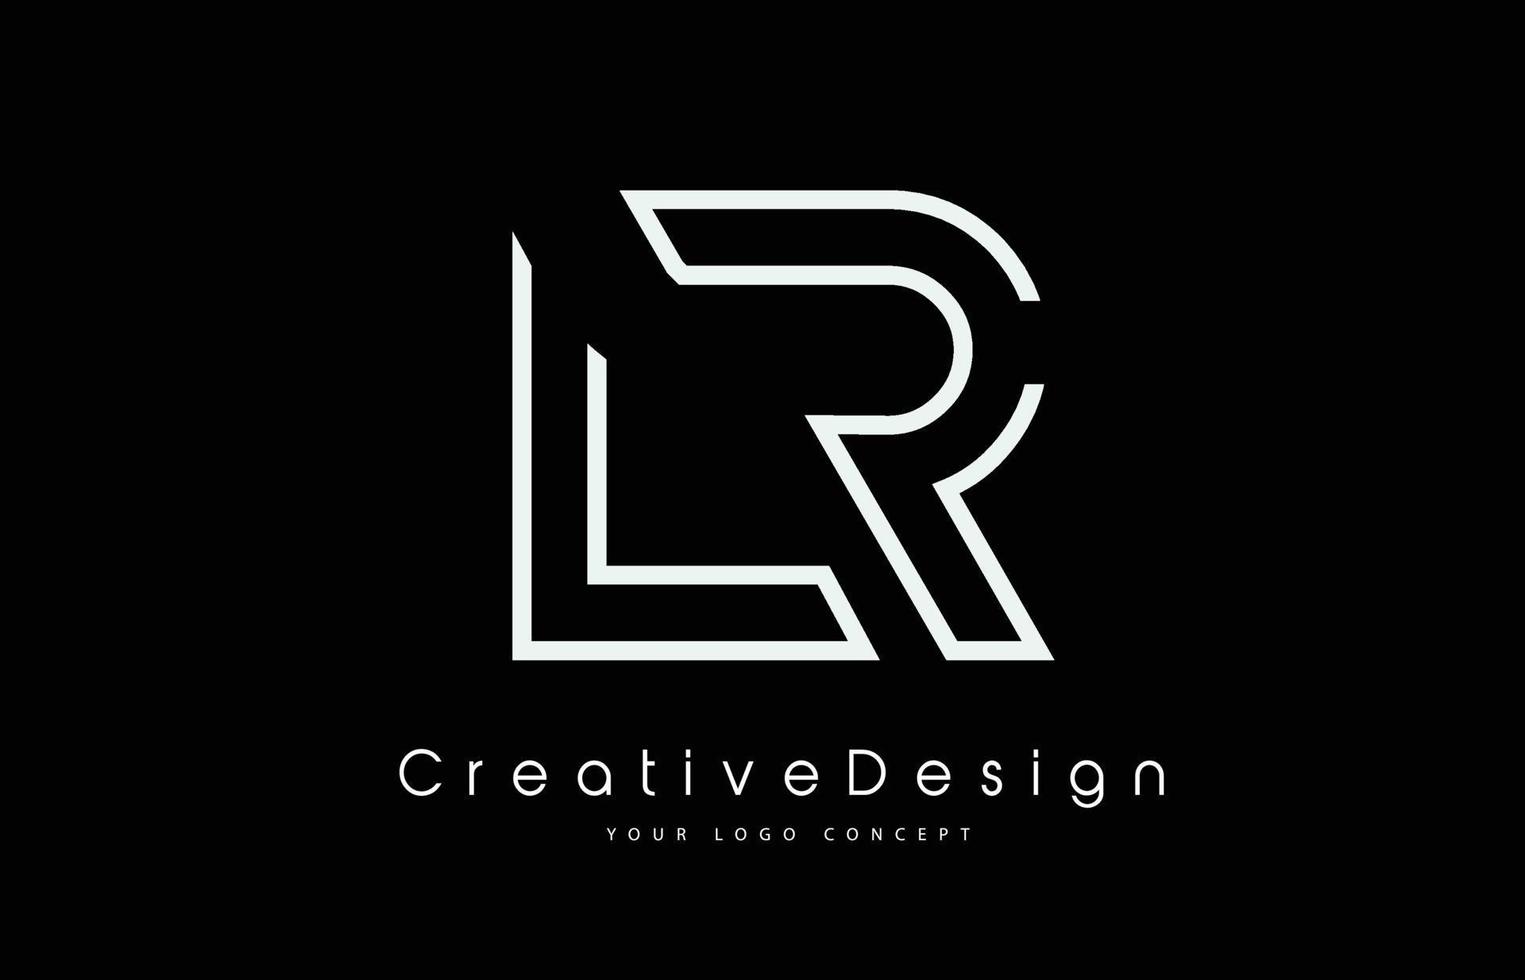 LR Letter Logo Design in Black White. vector